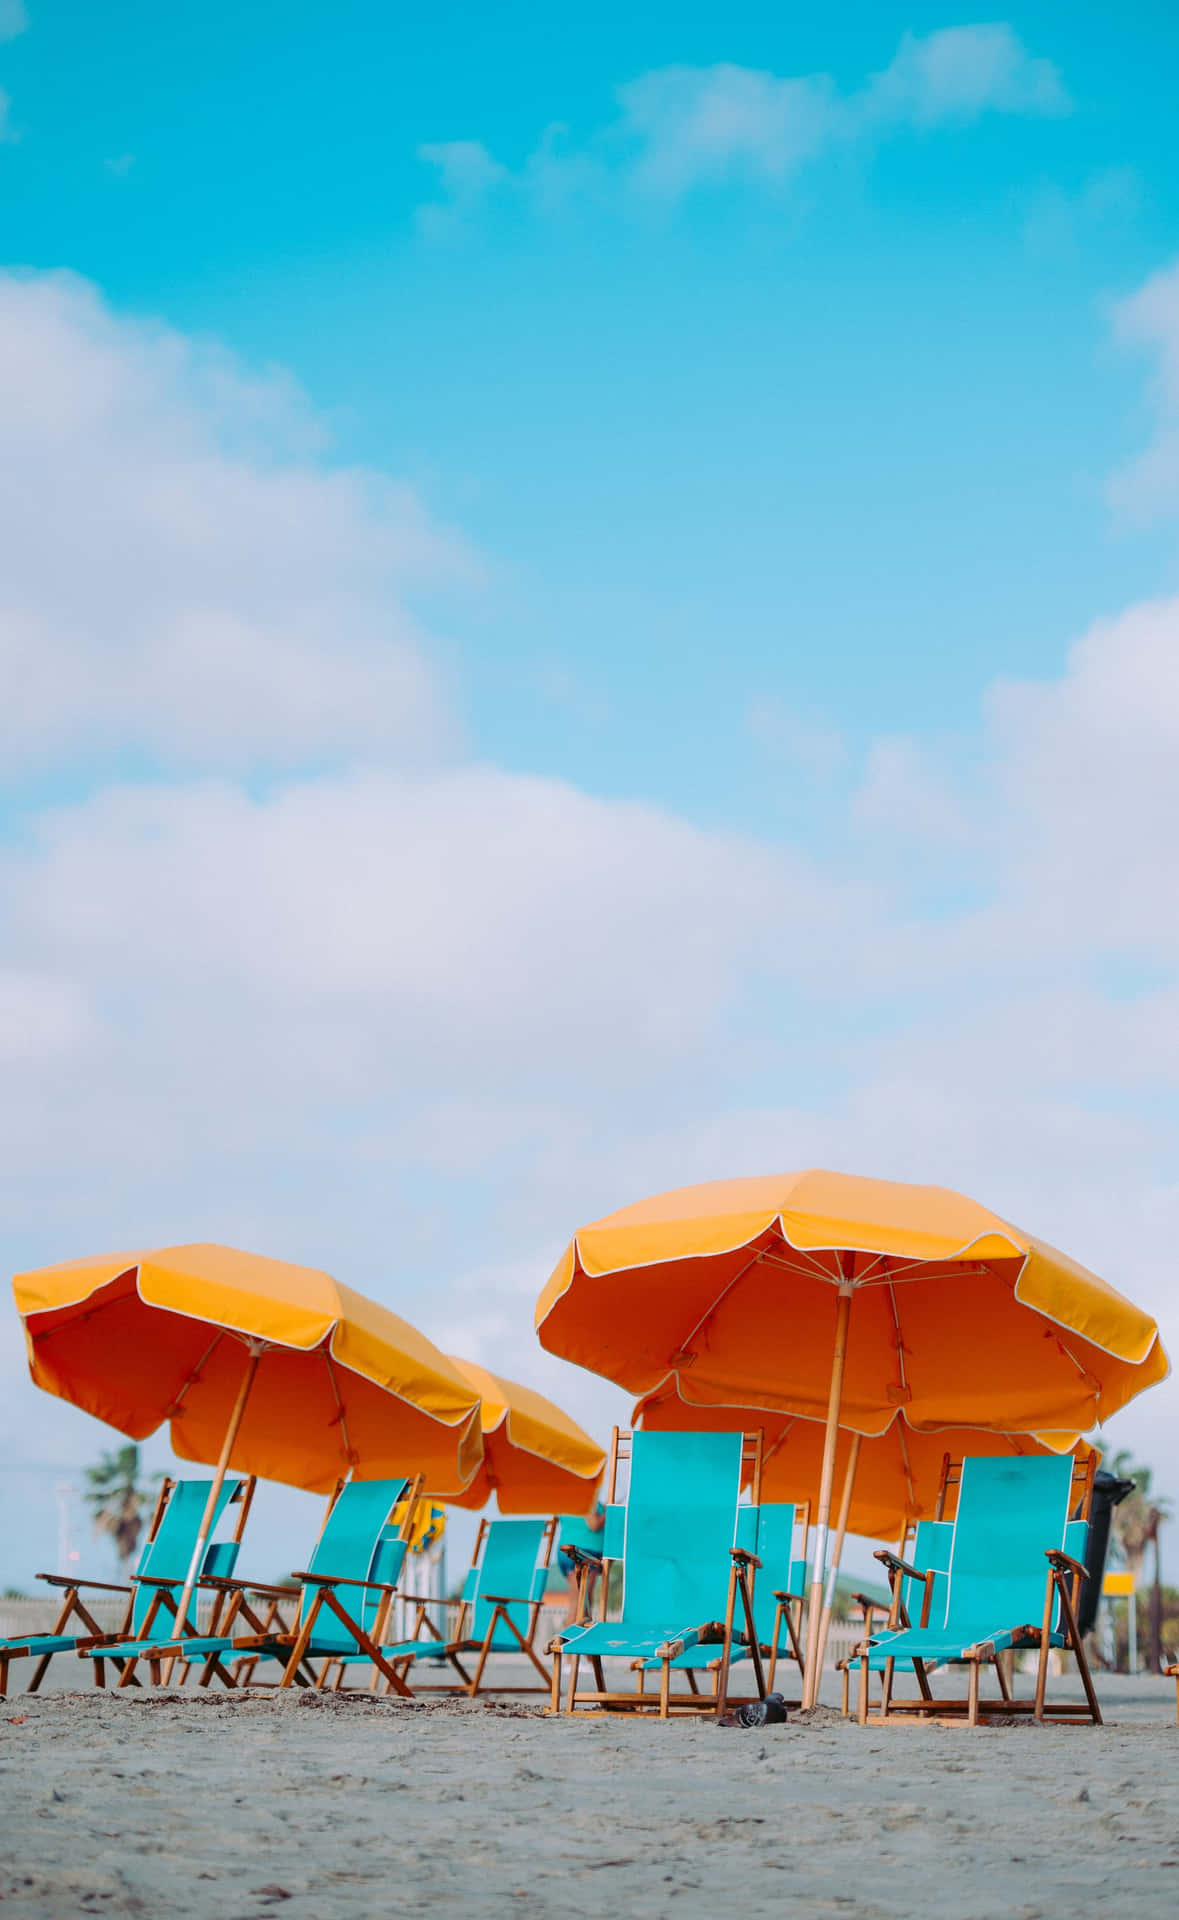 Aesthetic Summer Picture Beach Umbrella